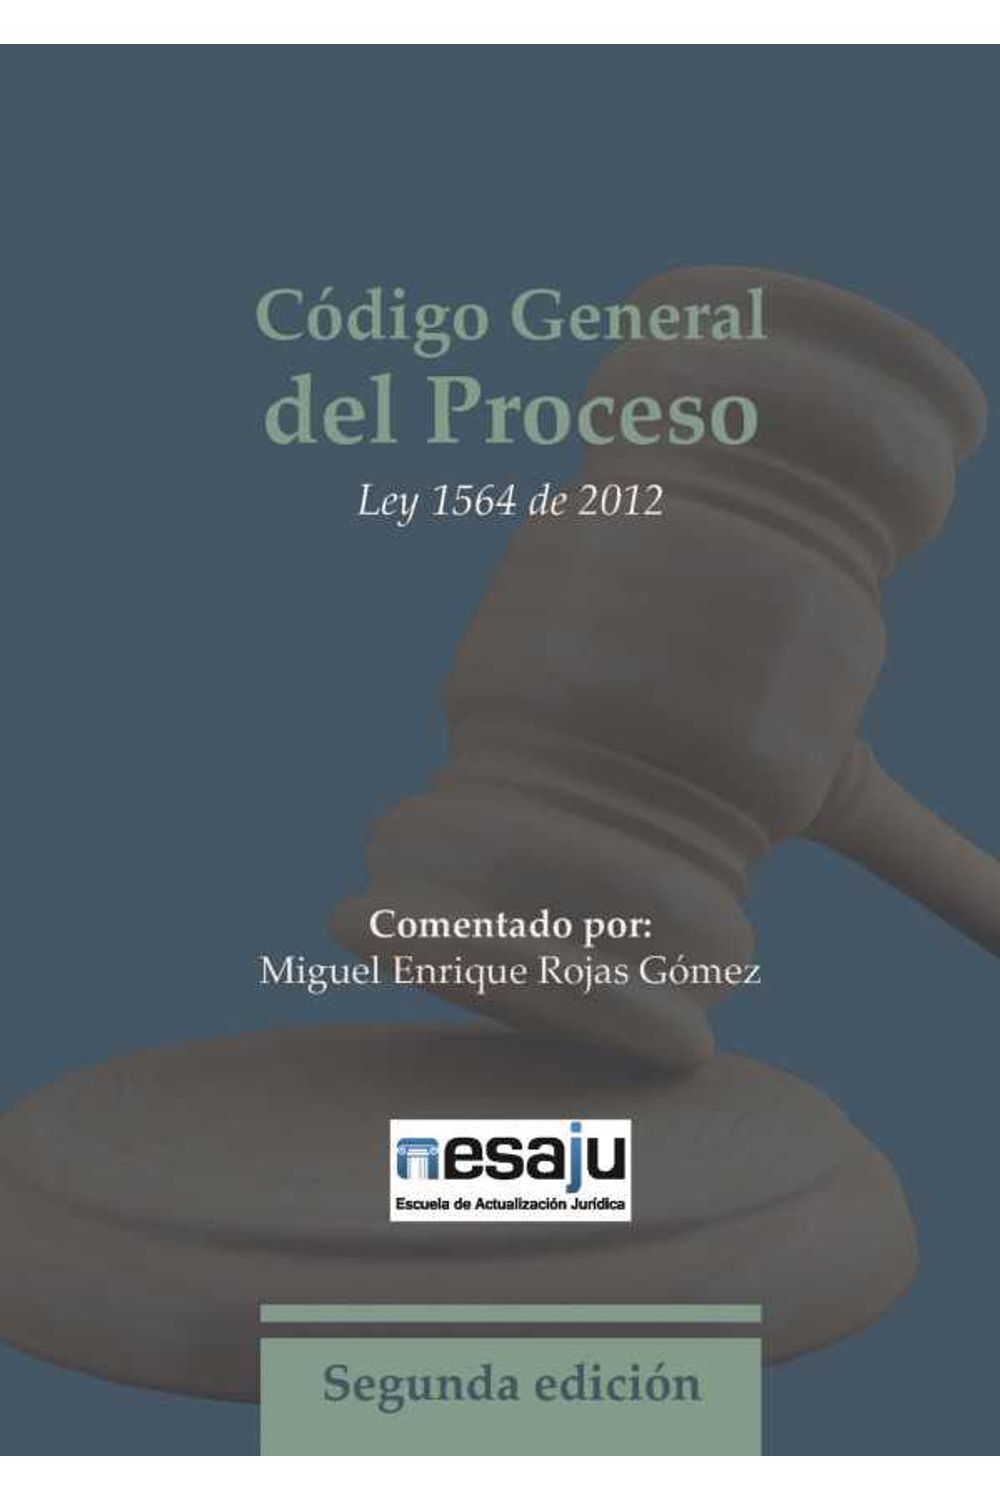 bw-coacutedigo-general-del-proceso-ley-1564-de-2012-escuela-de-actualizacion-juridica-esaju-9789585759978